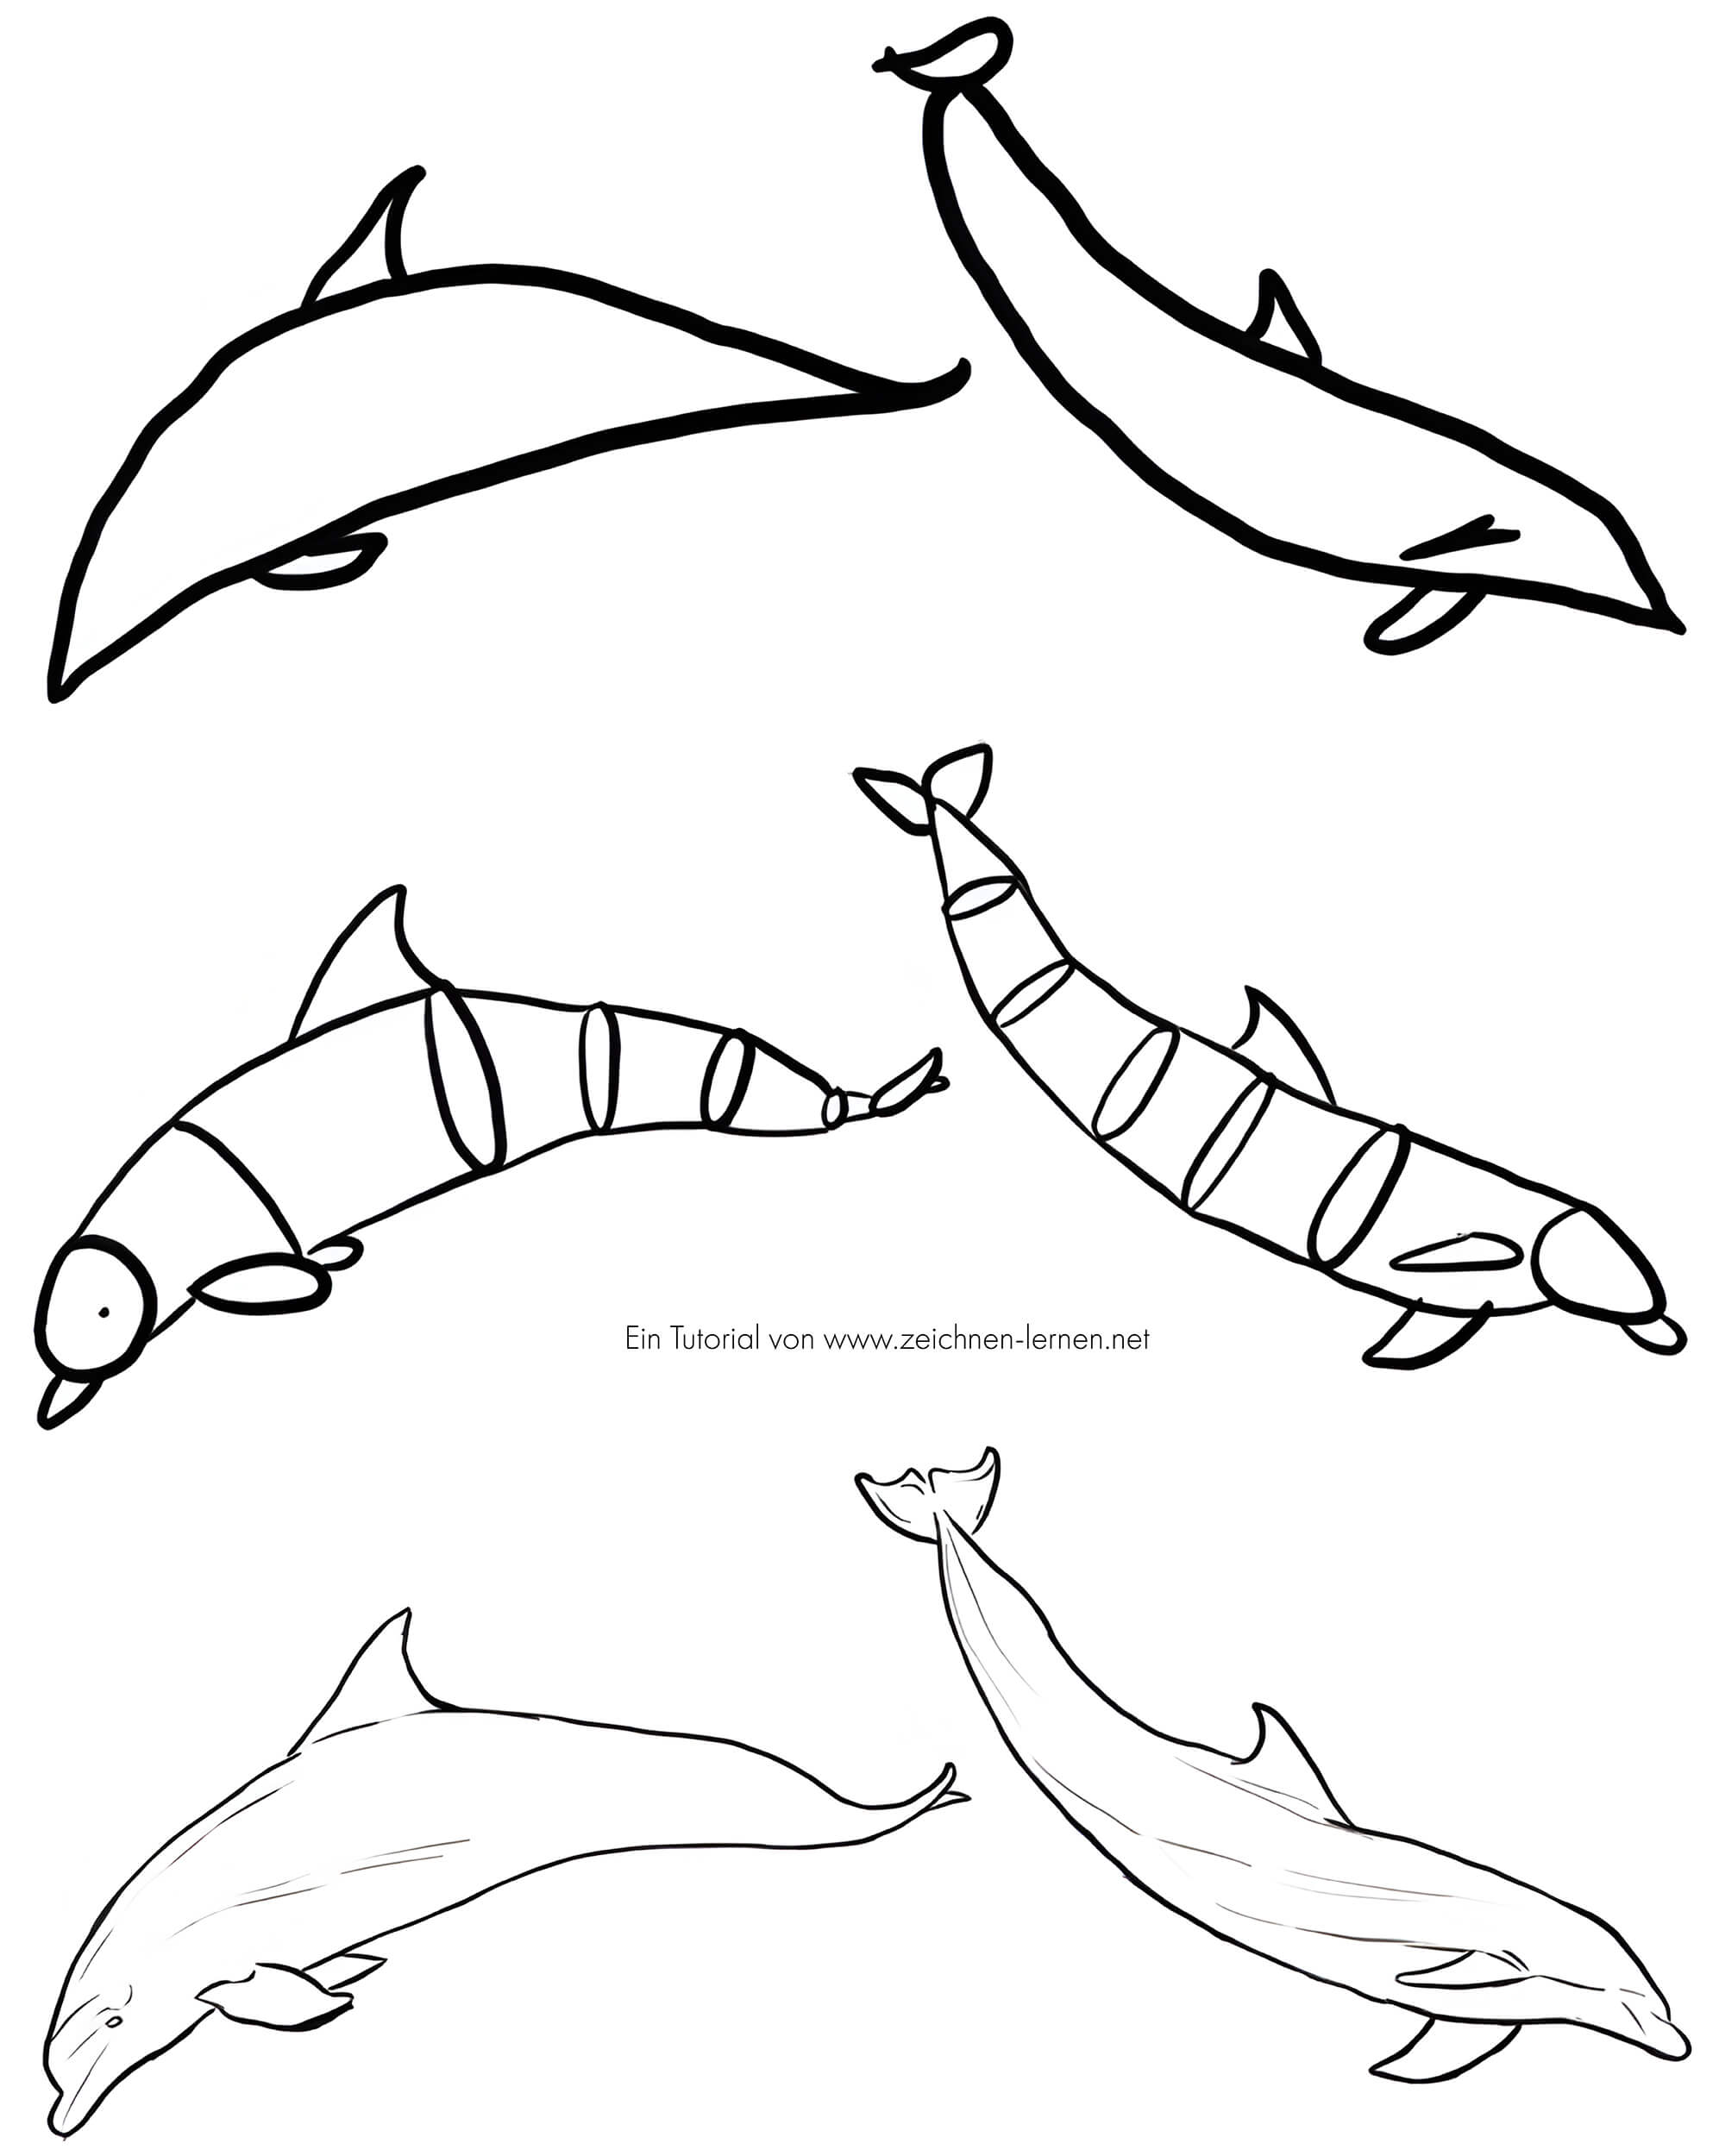 Dibujar dos delfines bajo el agua